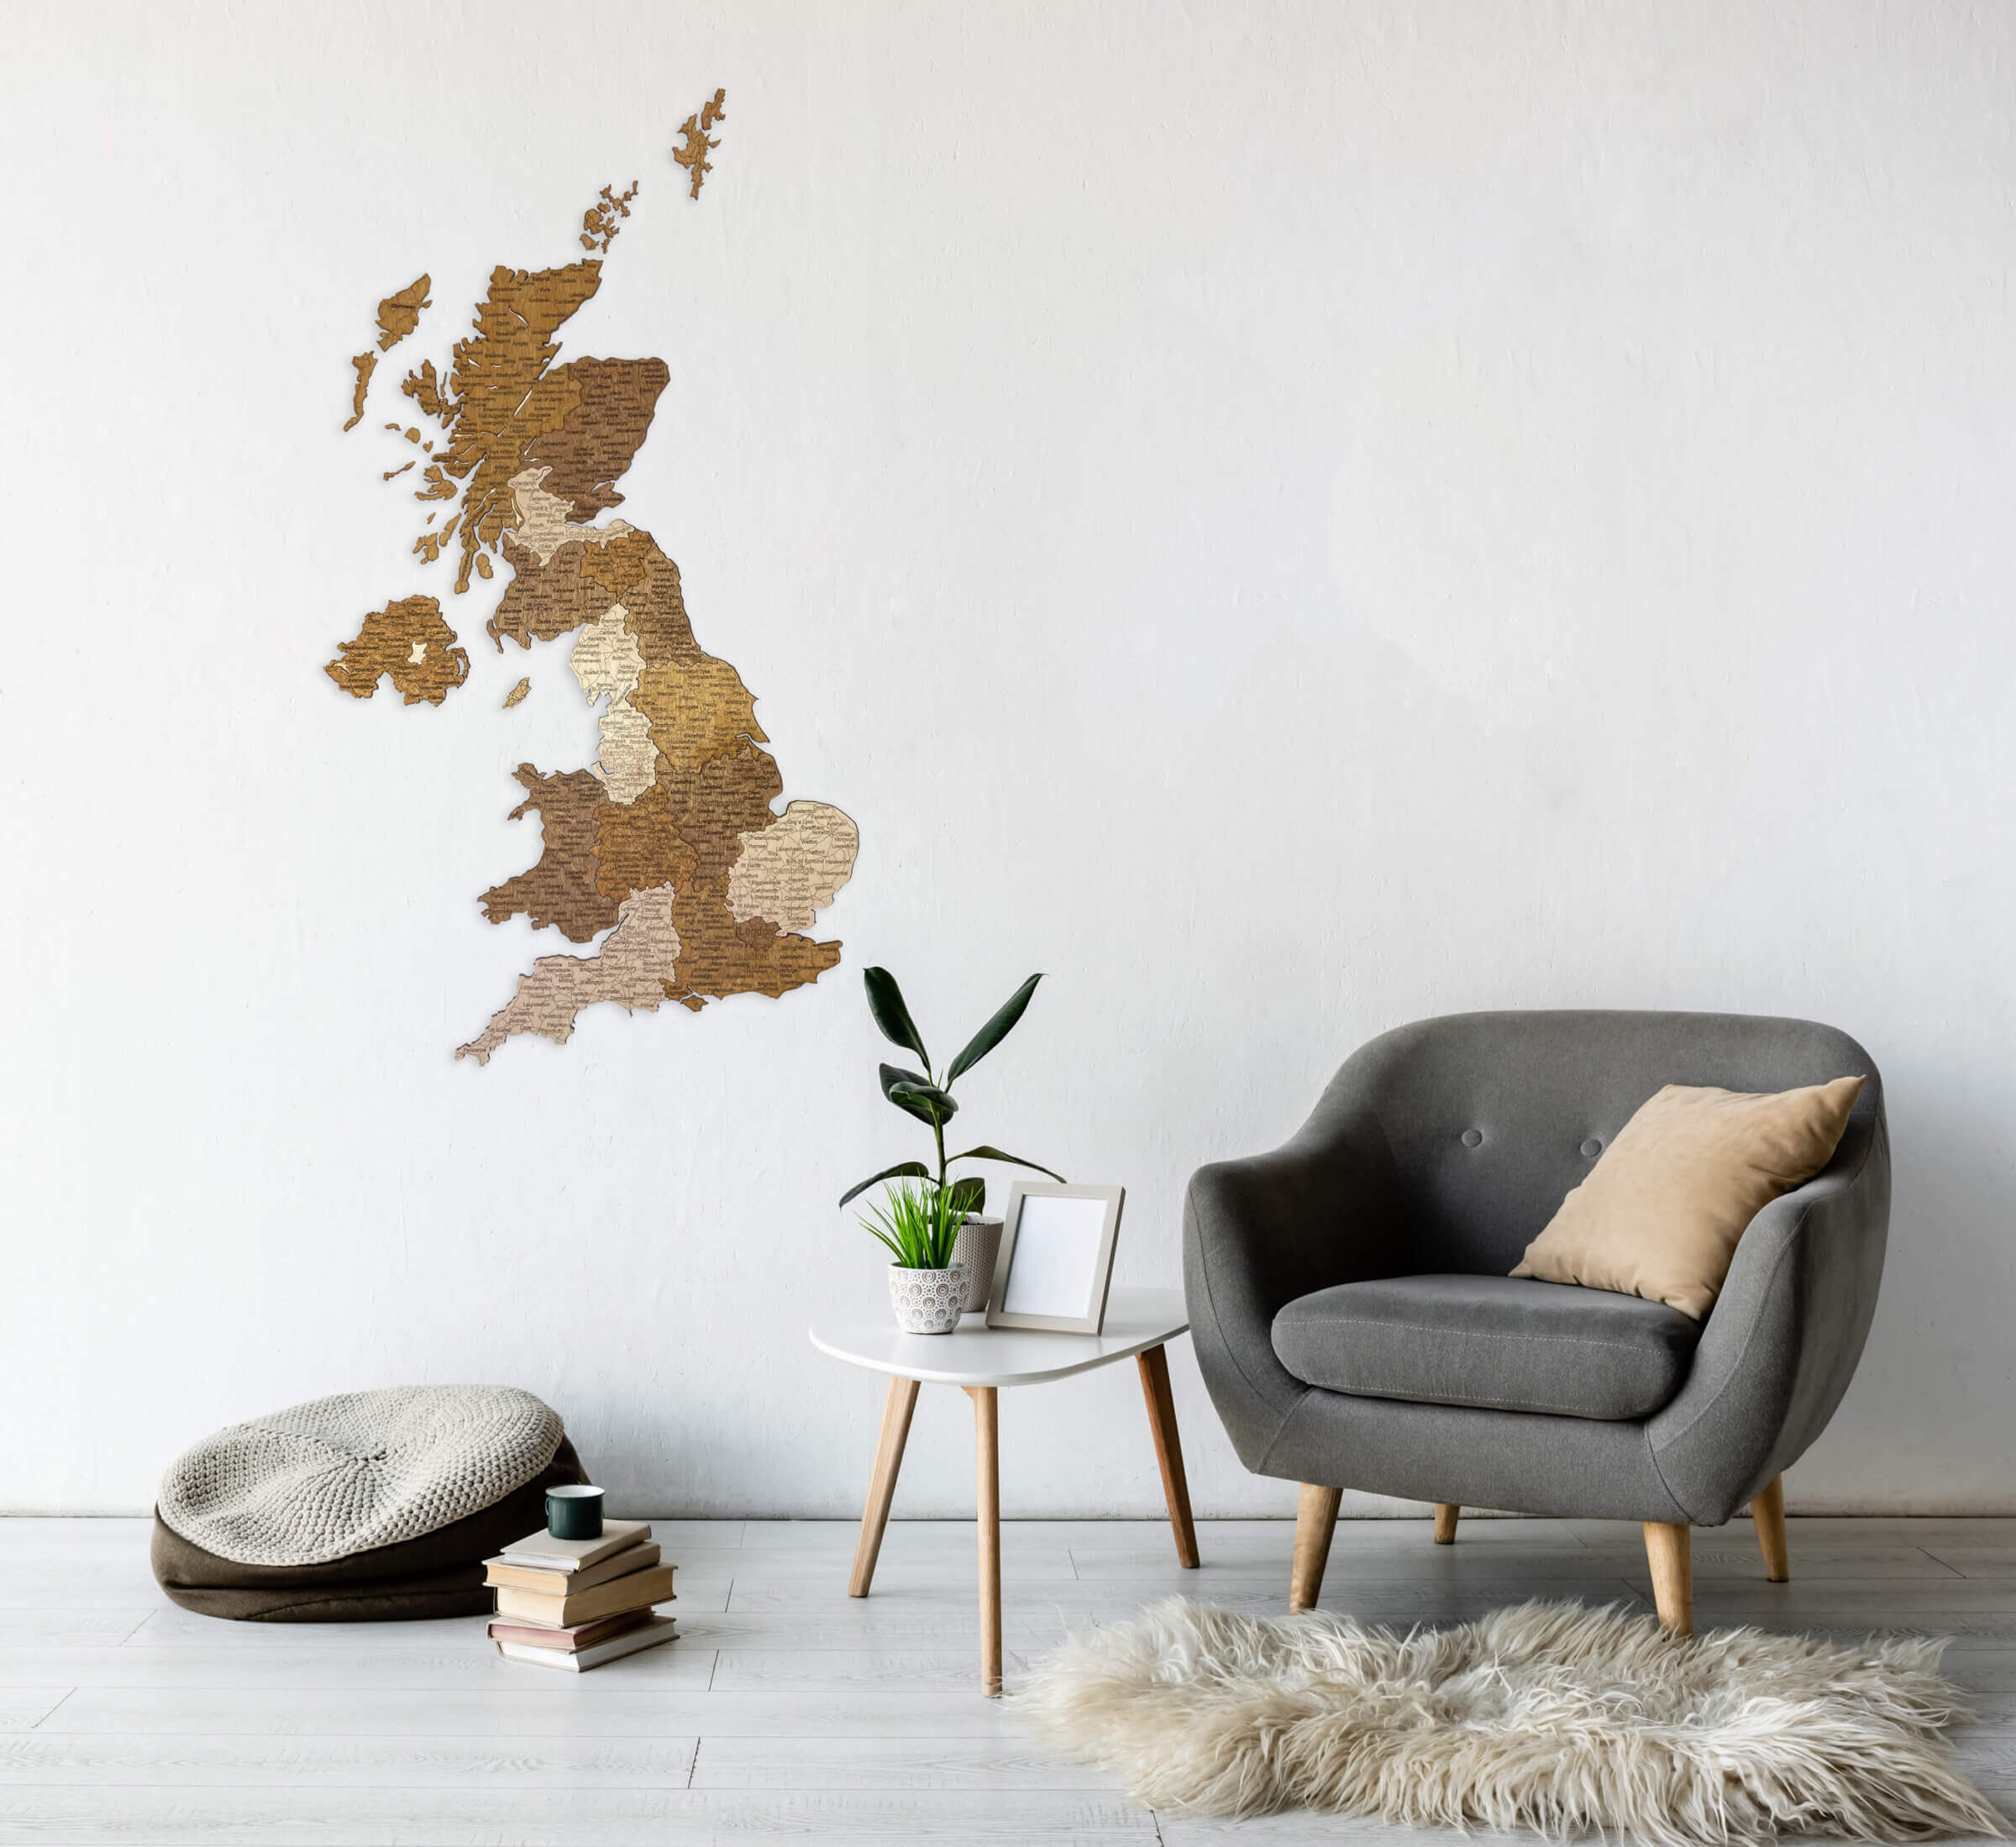 Drevená mapa UK - nástenná dekorácia